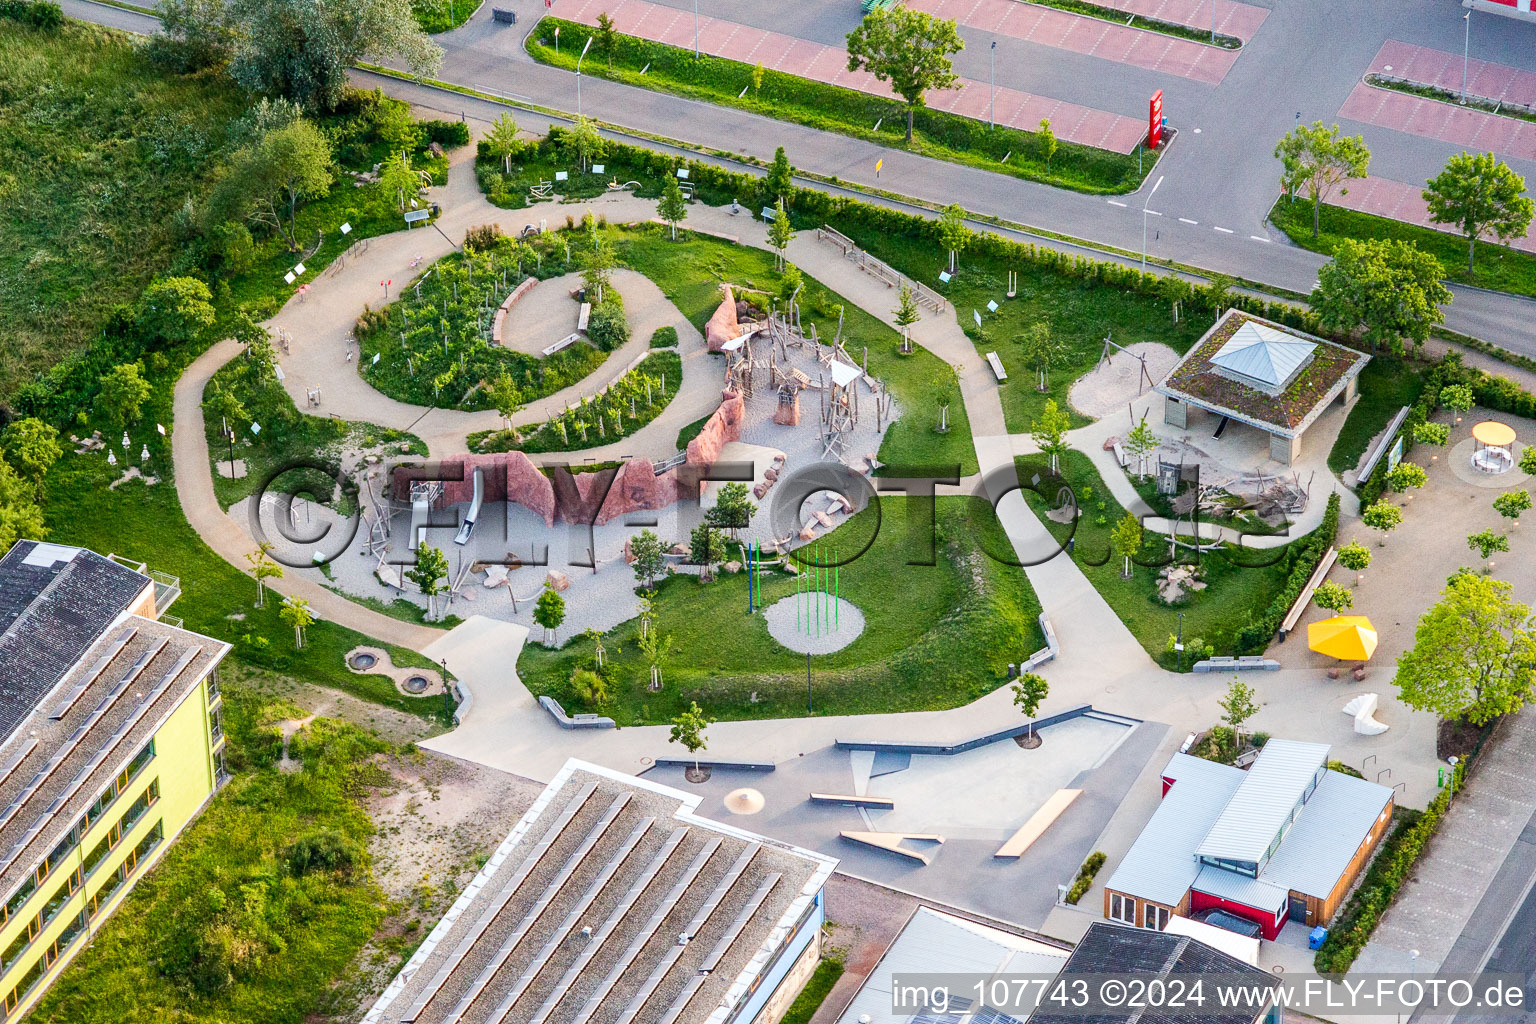 Luftbild von Spielplatz alla hopp! in Deidesheim im Bundesland Rheinland-Pfalz, Deutschland